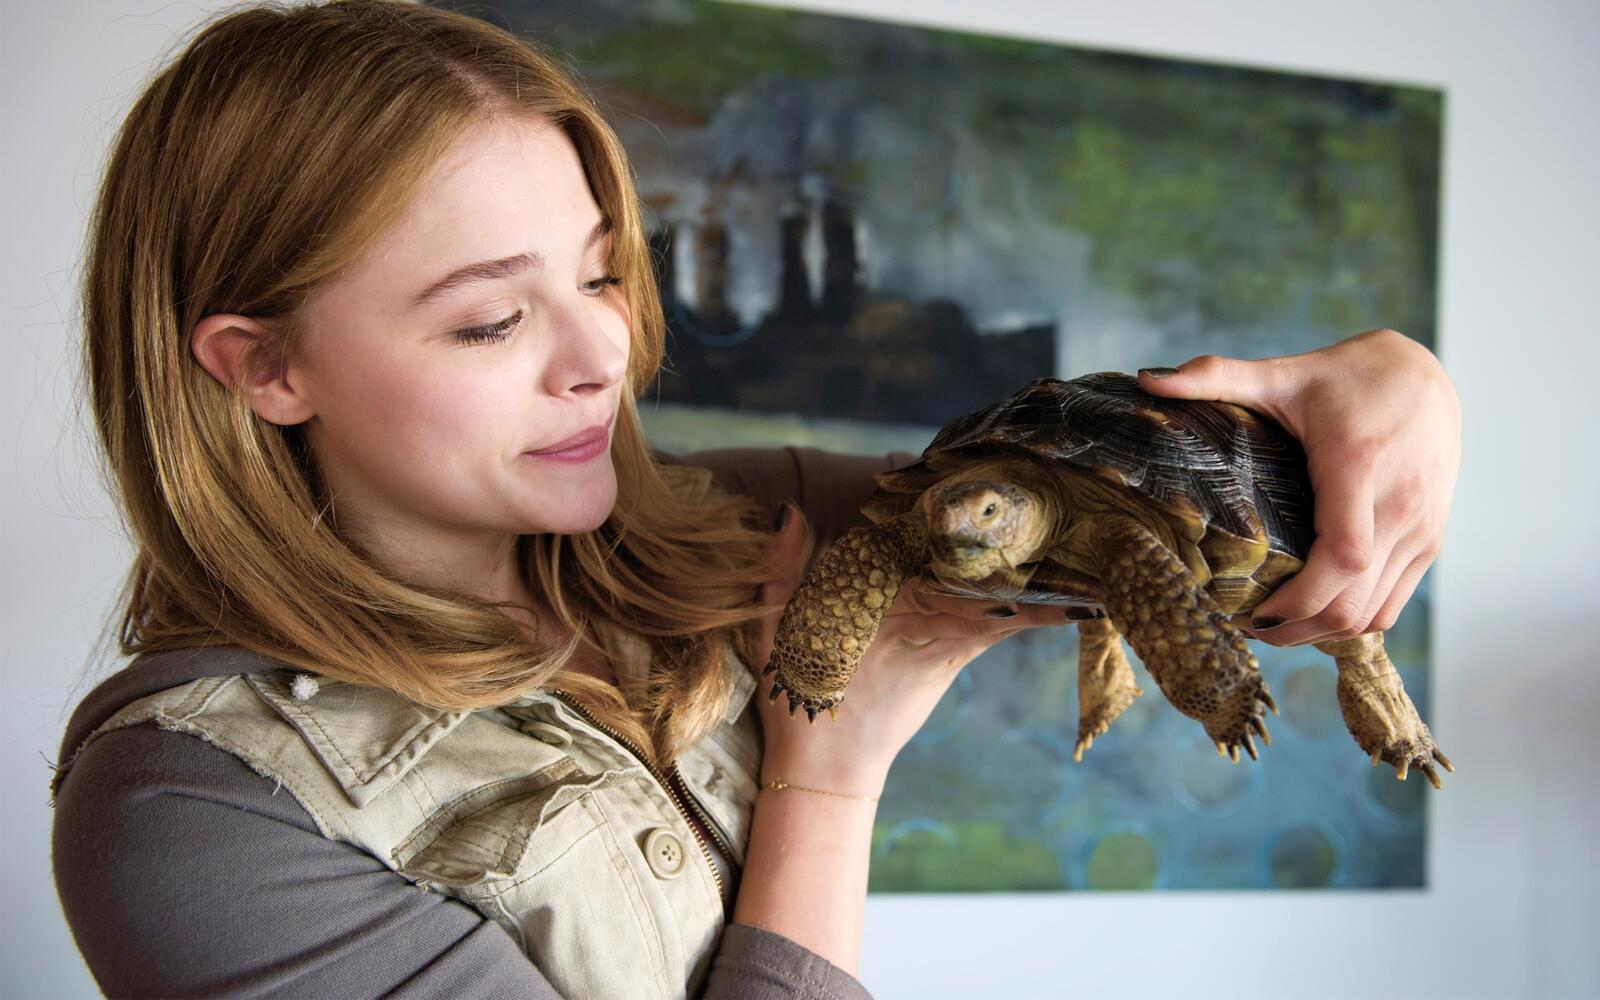 Бесплатное фото Хлоя Морец демонстрирует свою большую черепаху